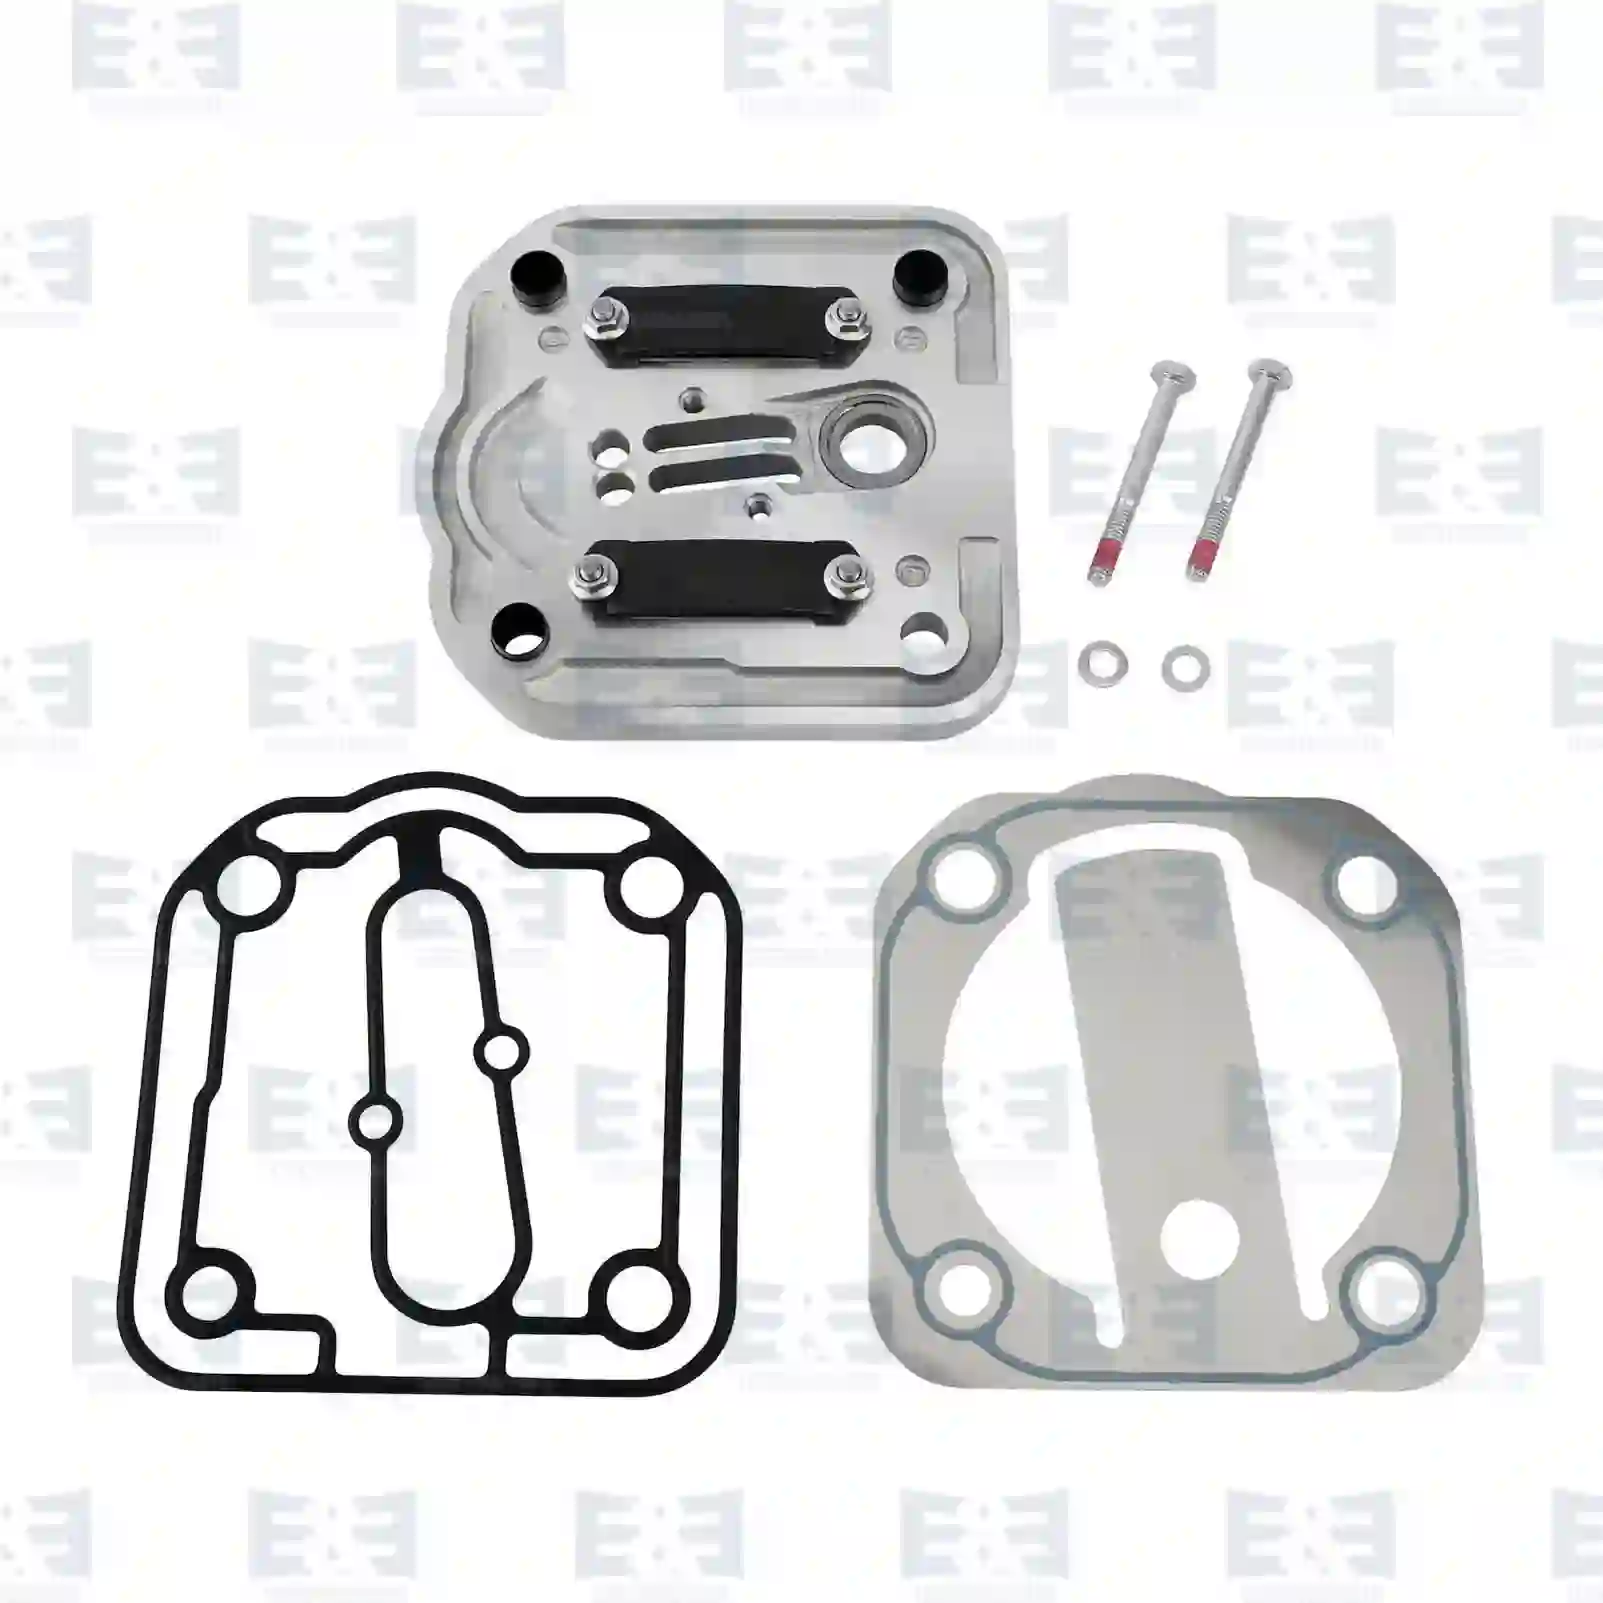  Valve plate || E&E Truck Spare Parts | Truck Spare Parts, Auotomotive Spare Parts